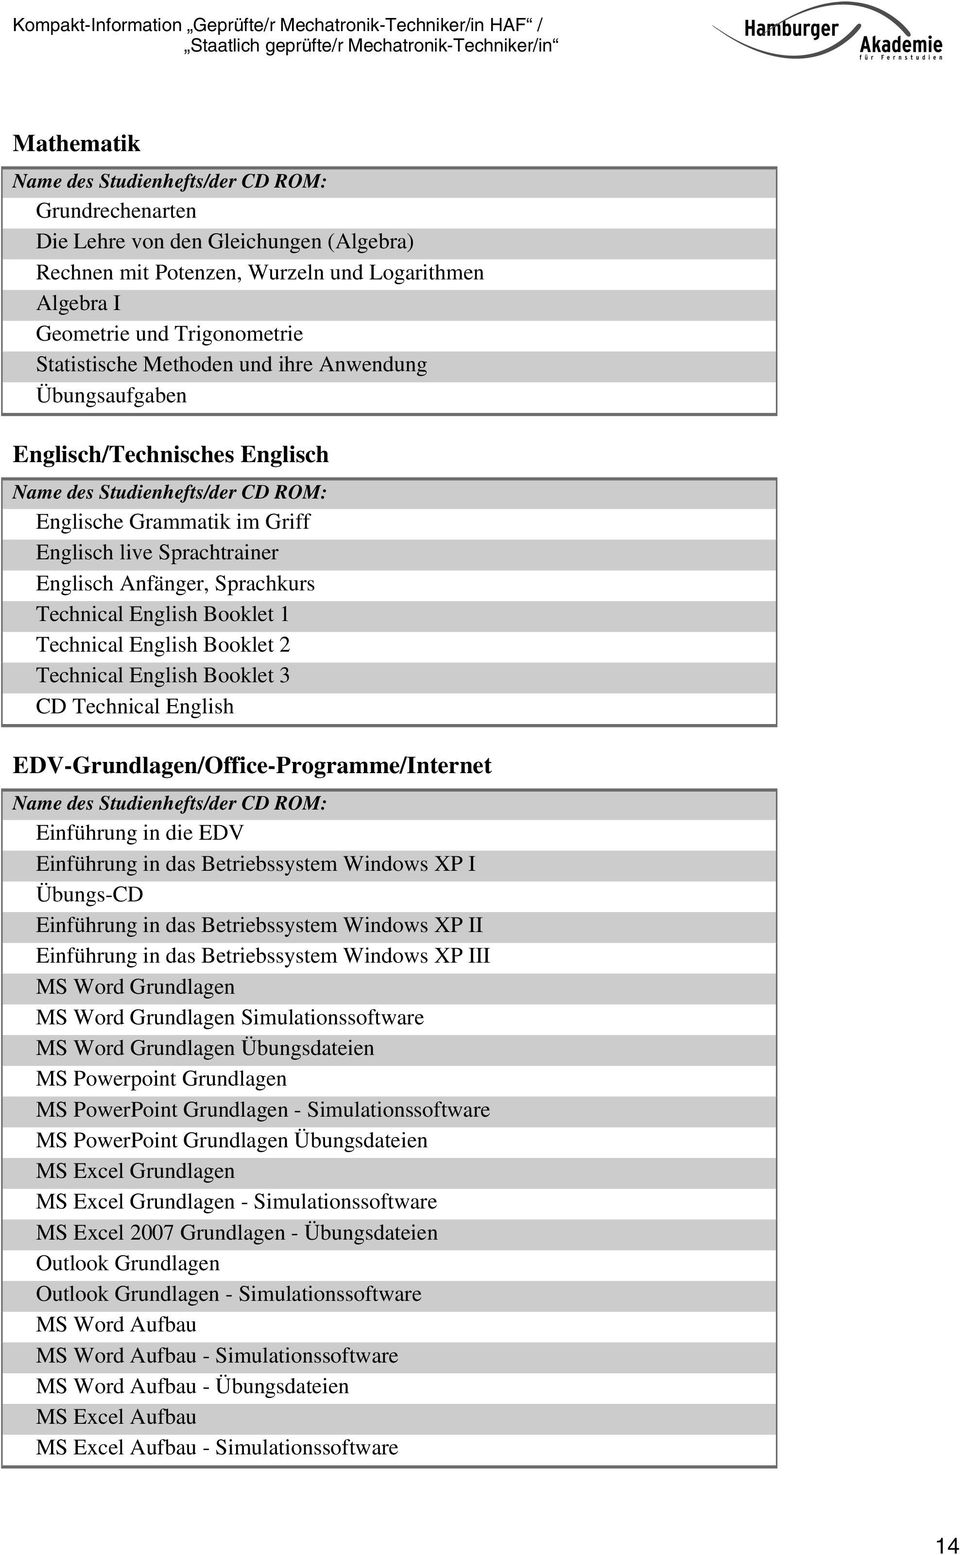 English Booklet 3 CD Technical English EDV-Grundlagen/Office-Programme/Internet Einführung in die EDV Einführung in das Betriebssystem Windows XP I Übungs-CD Einführung in das Betriebssystem Windows